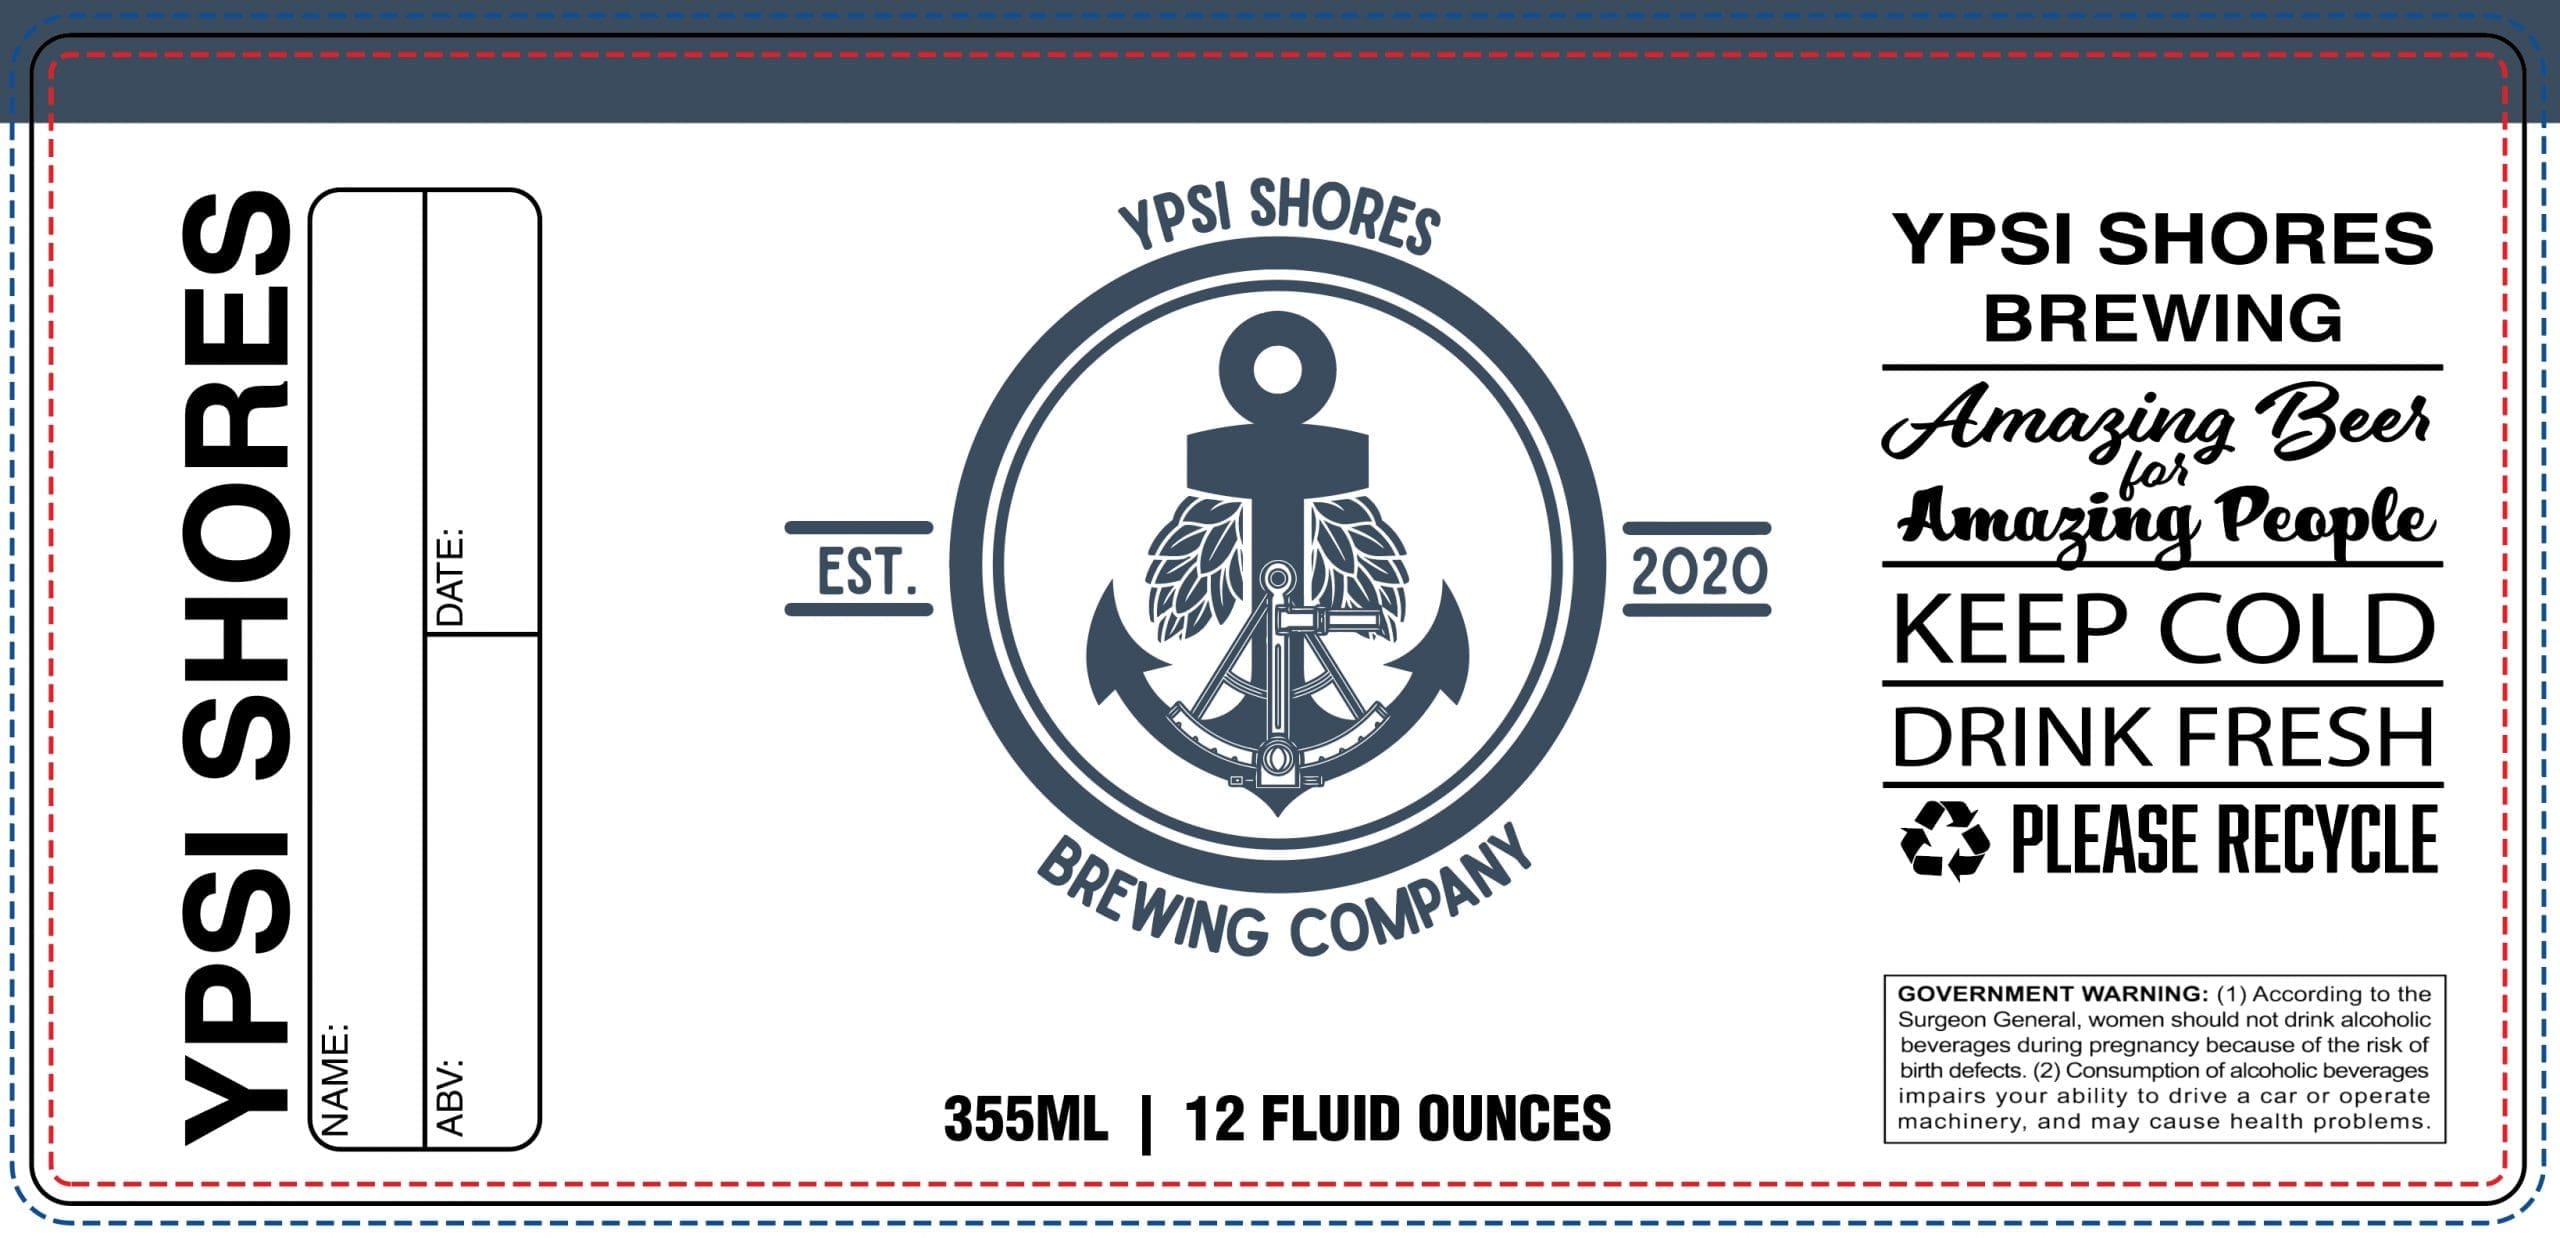 Ypsi Shores Brewing - 16 oz Can Label